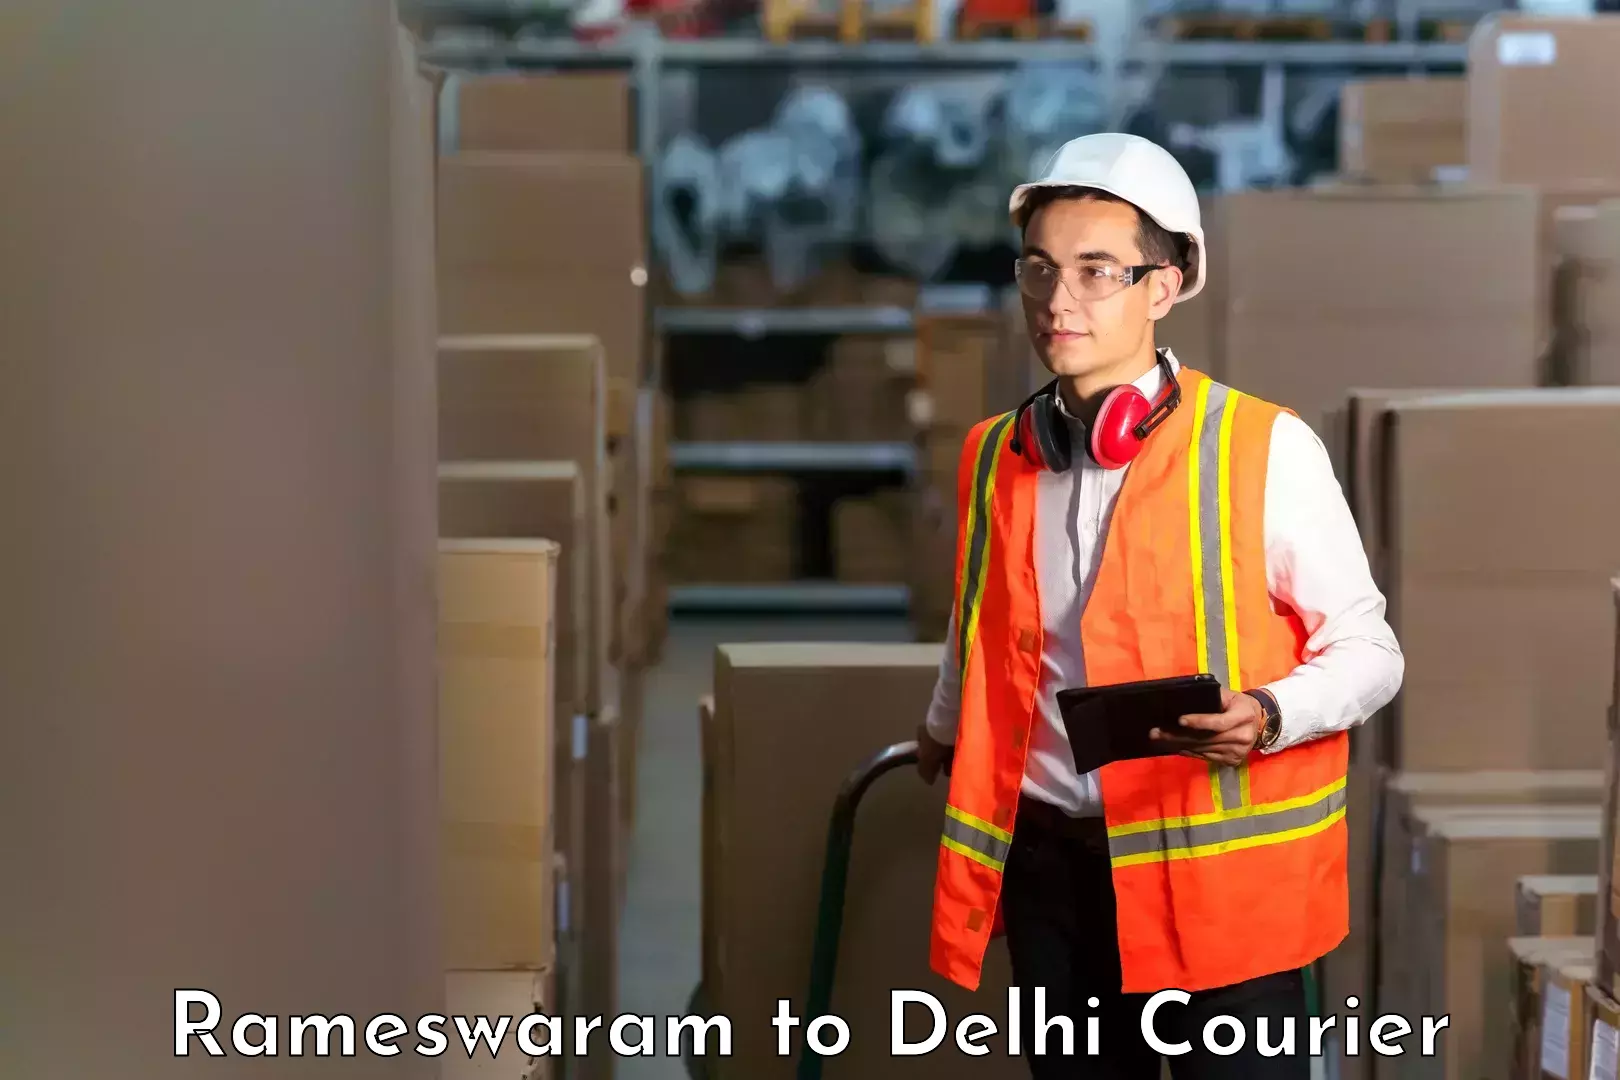 Cargo delivery service Rameswaram to Delhi